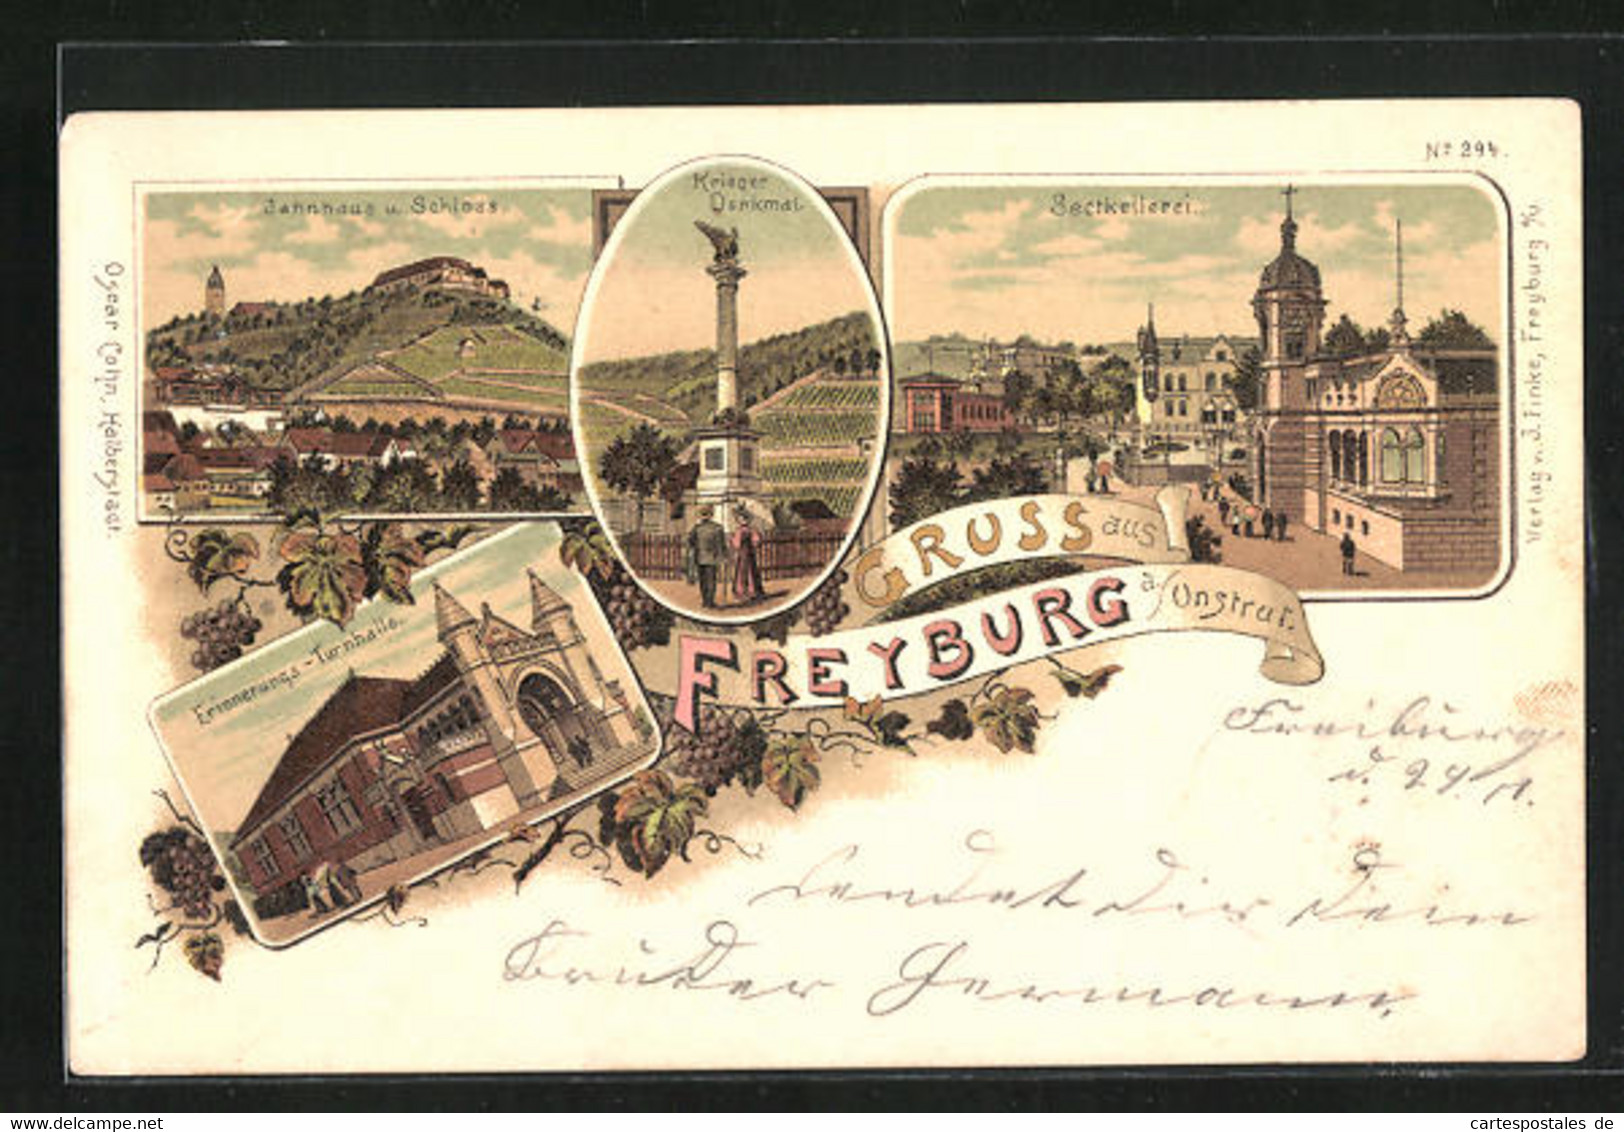 Lithographie Freyburg / Unstrut, Sectkellerei, Jahnhaus U. Schloss, Erinnerungs-Turnhalle - Freyburg A. D. Unstrut